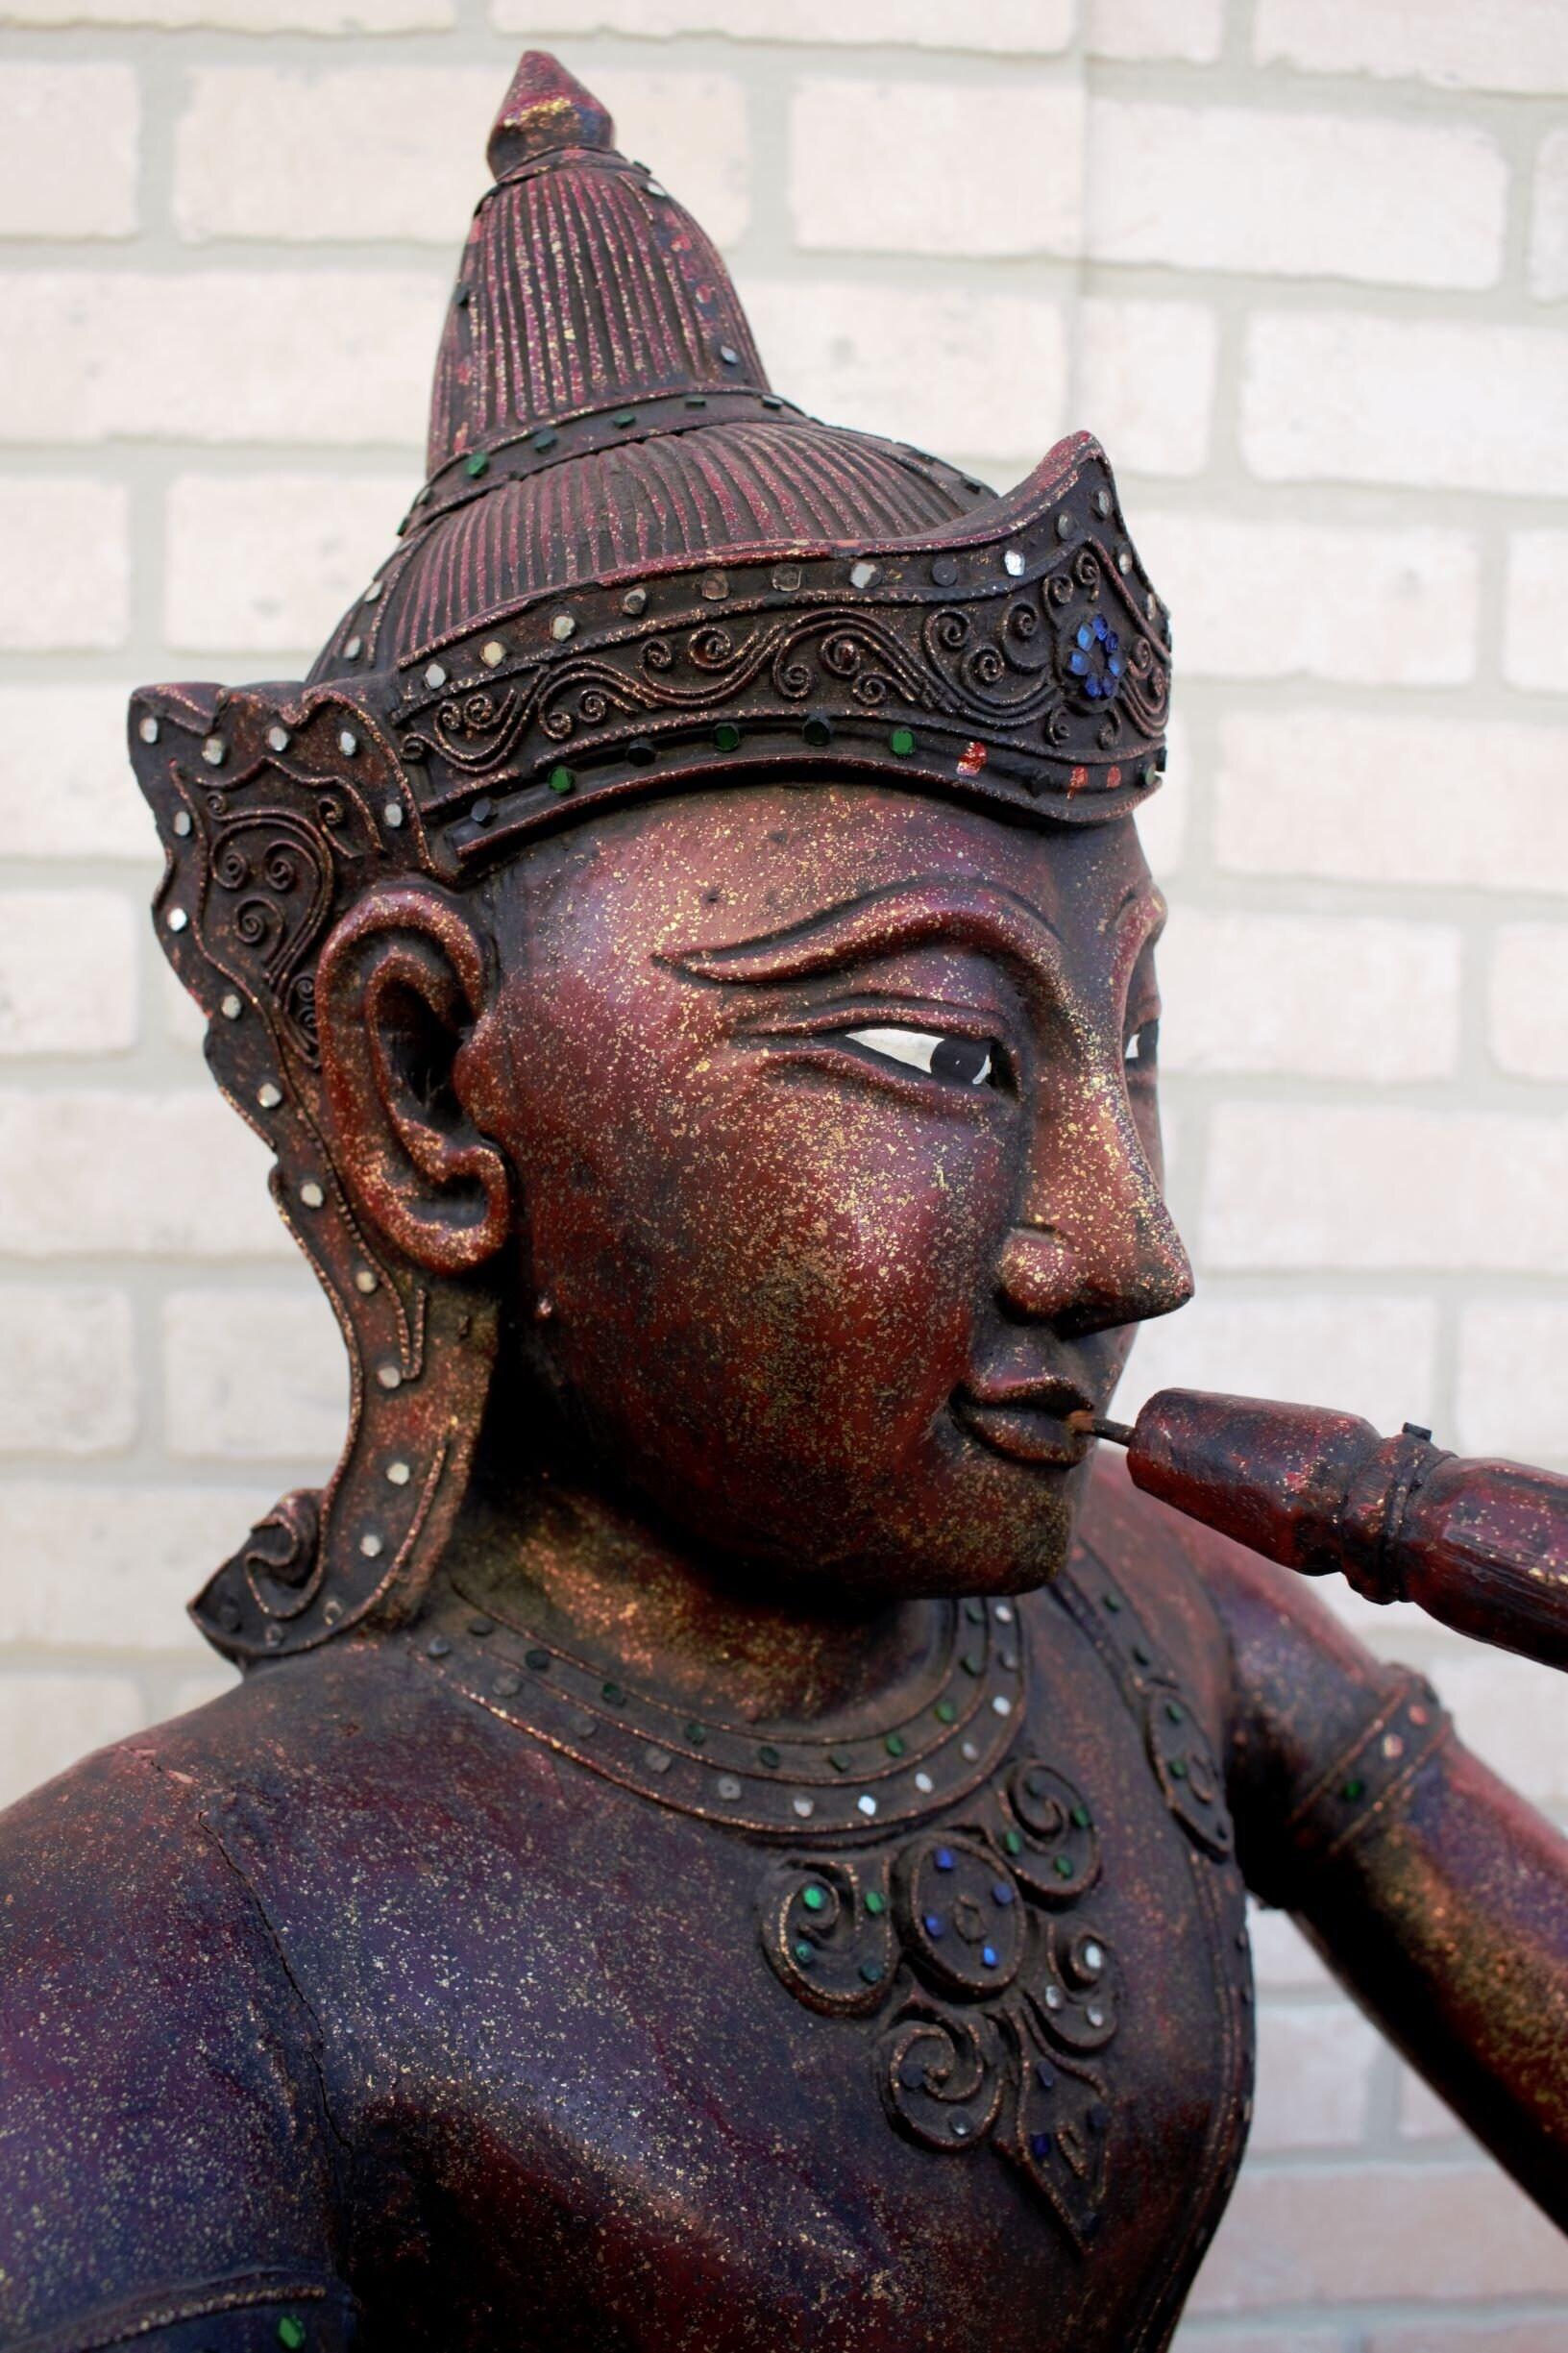 Ancien Bouddha assis sculpté thaïlandais jouant de la flûte

Il s'agit d'un Bouddha thaïlandais ancien, avec une base triangulaire correspondant à sa position assise en lotus. Il tient une flûte et est orné de nombreux miroirs et filigranes. Cette